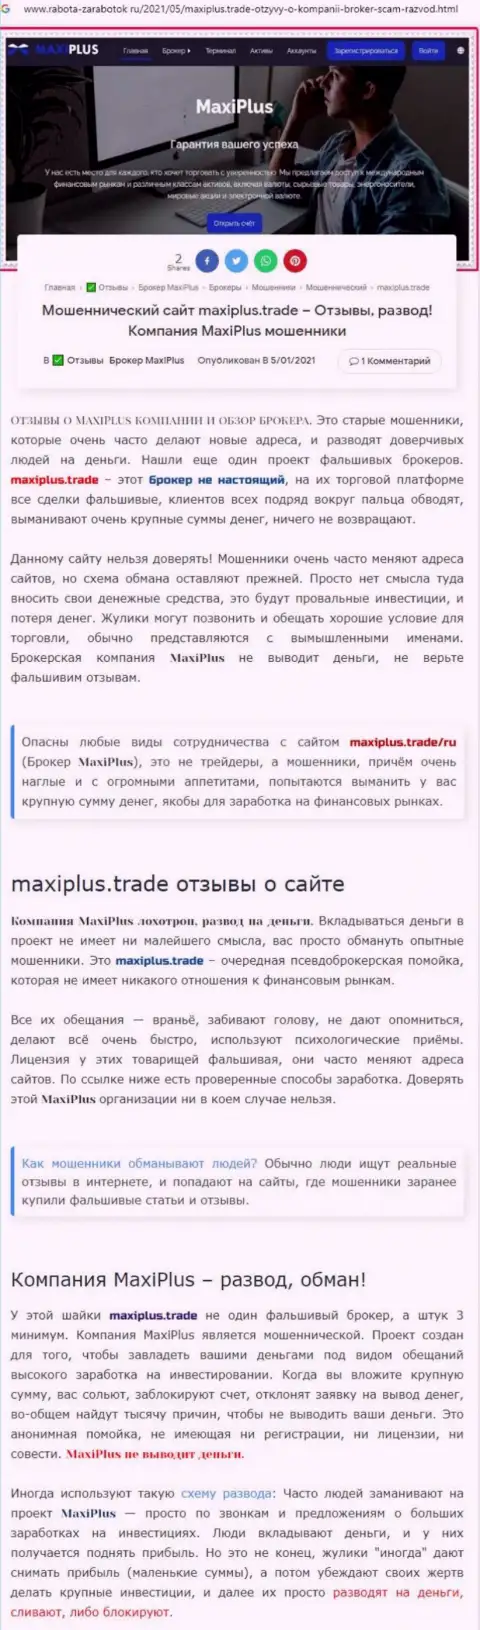 МаксиПлюс - это ШУЛЕРА !!! Особенности деятельности ЛОХОТРОНА (обзор)